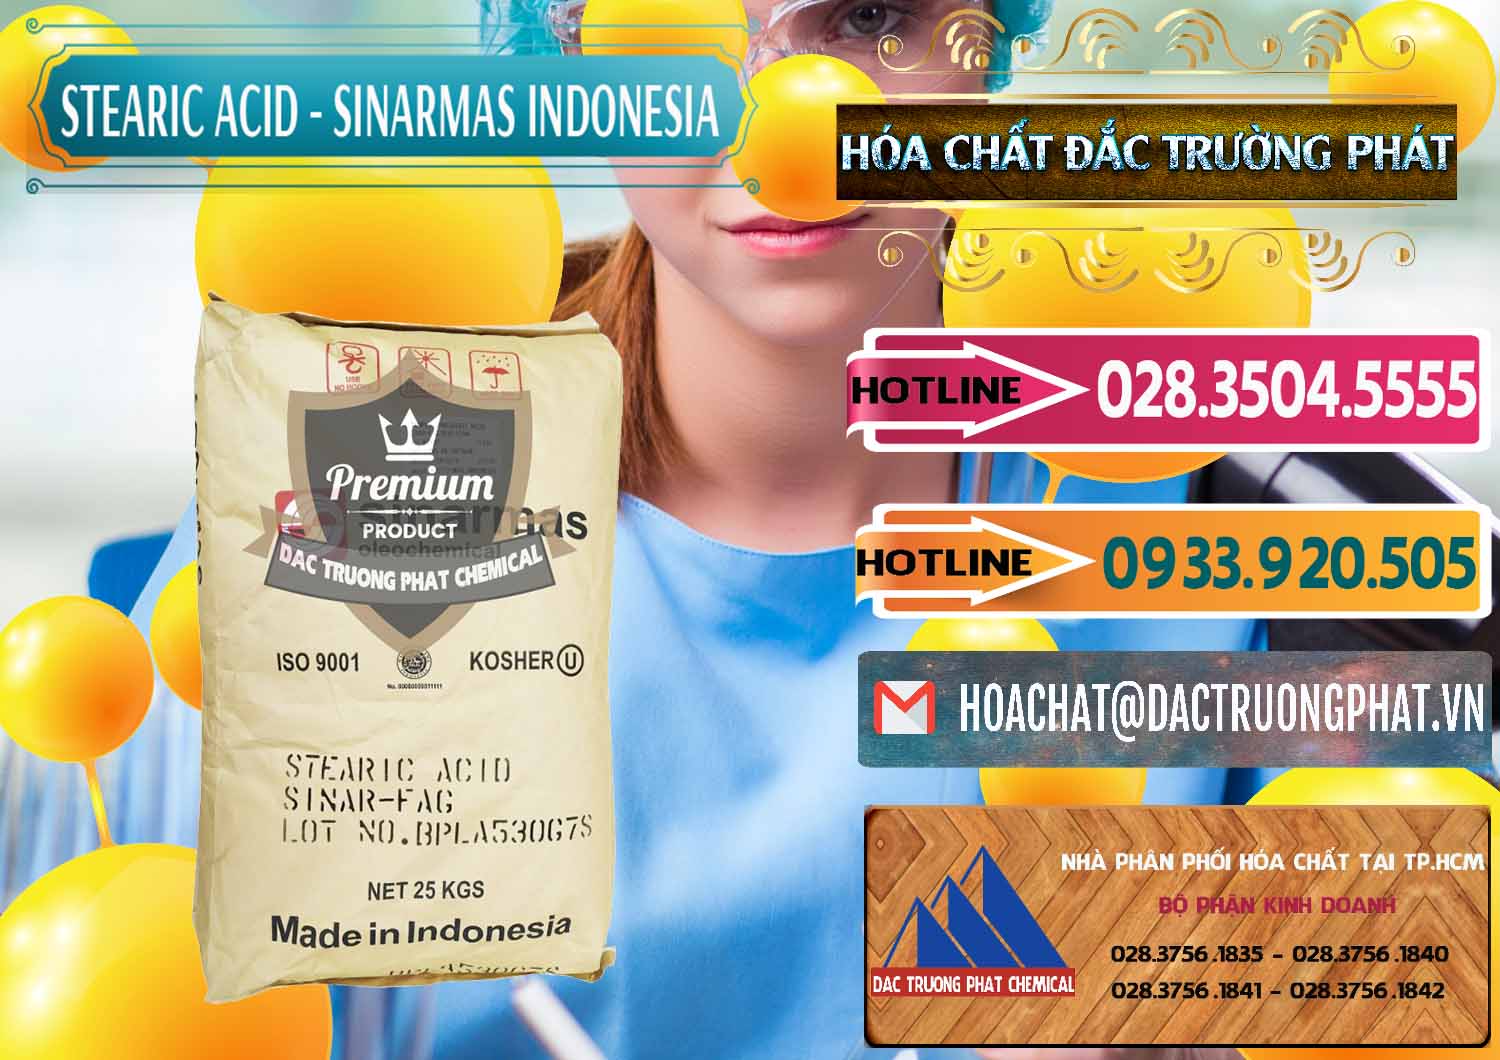 Chuyên phân phối ( bán ) Axit Stearic - Stearic Acid Sinarmas Indonesia - 0389 - Nơi chuyên cung cấp và kinh doanh hóa chất tại TP.HCM - dactruongphat.vn